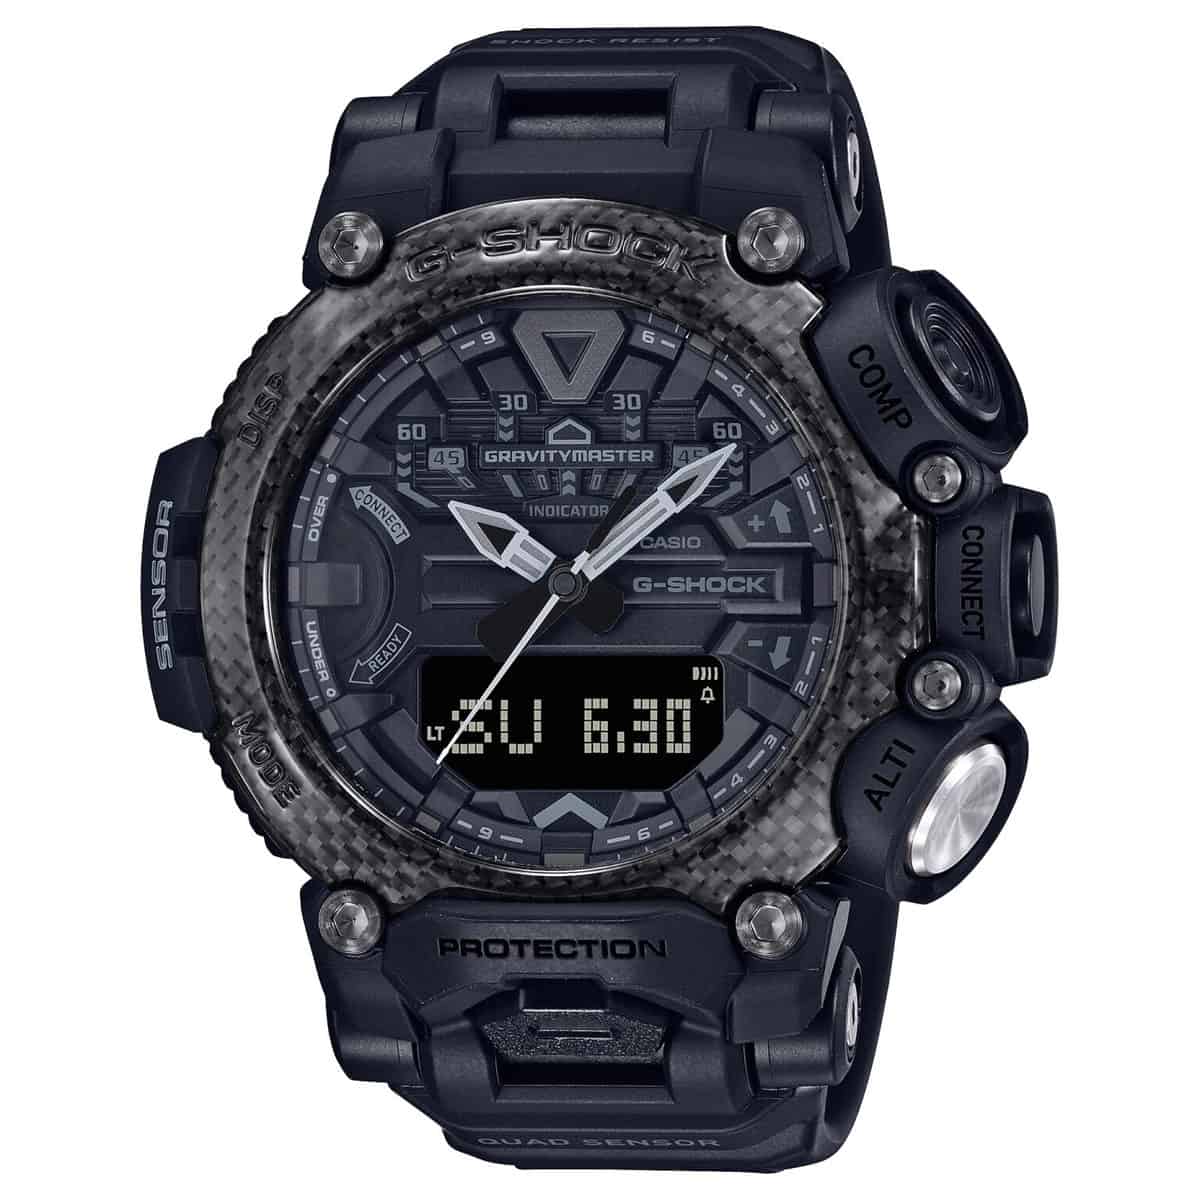 Casio G-Shock Gravitymaster GR-B200 watch